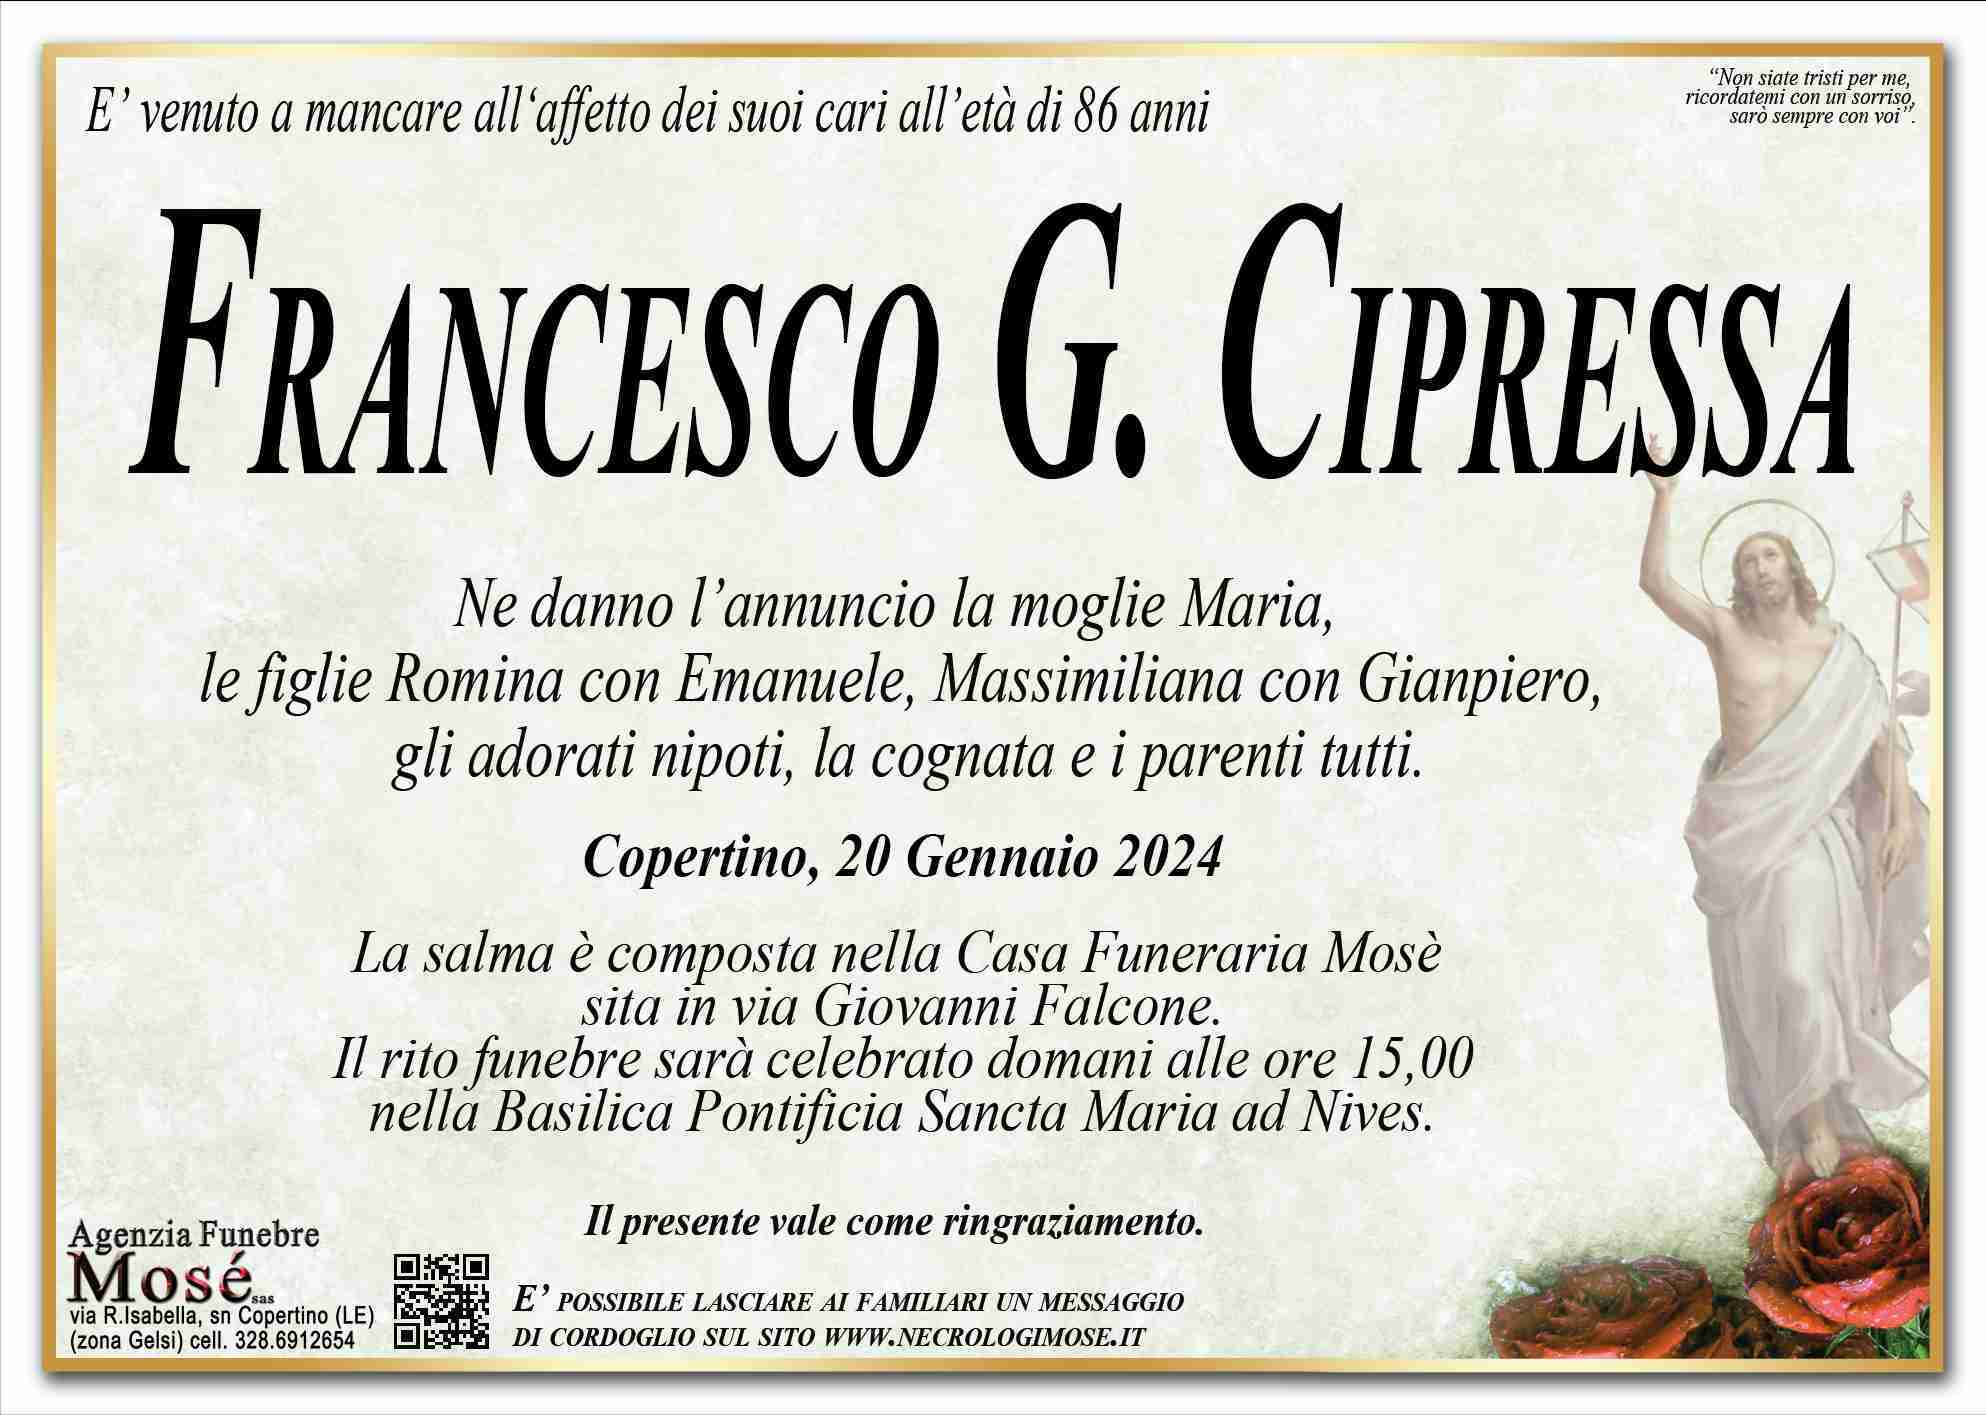 Francesco G. Cipressa